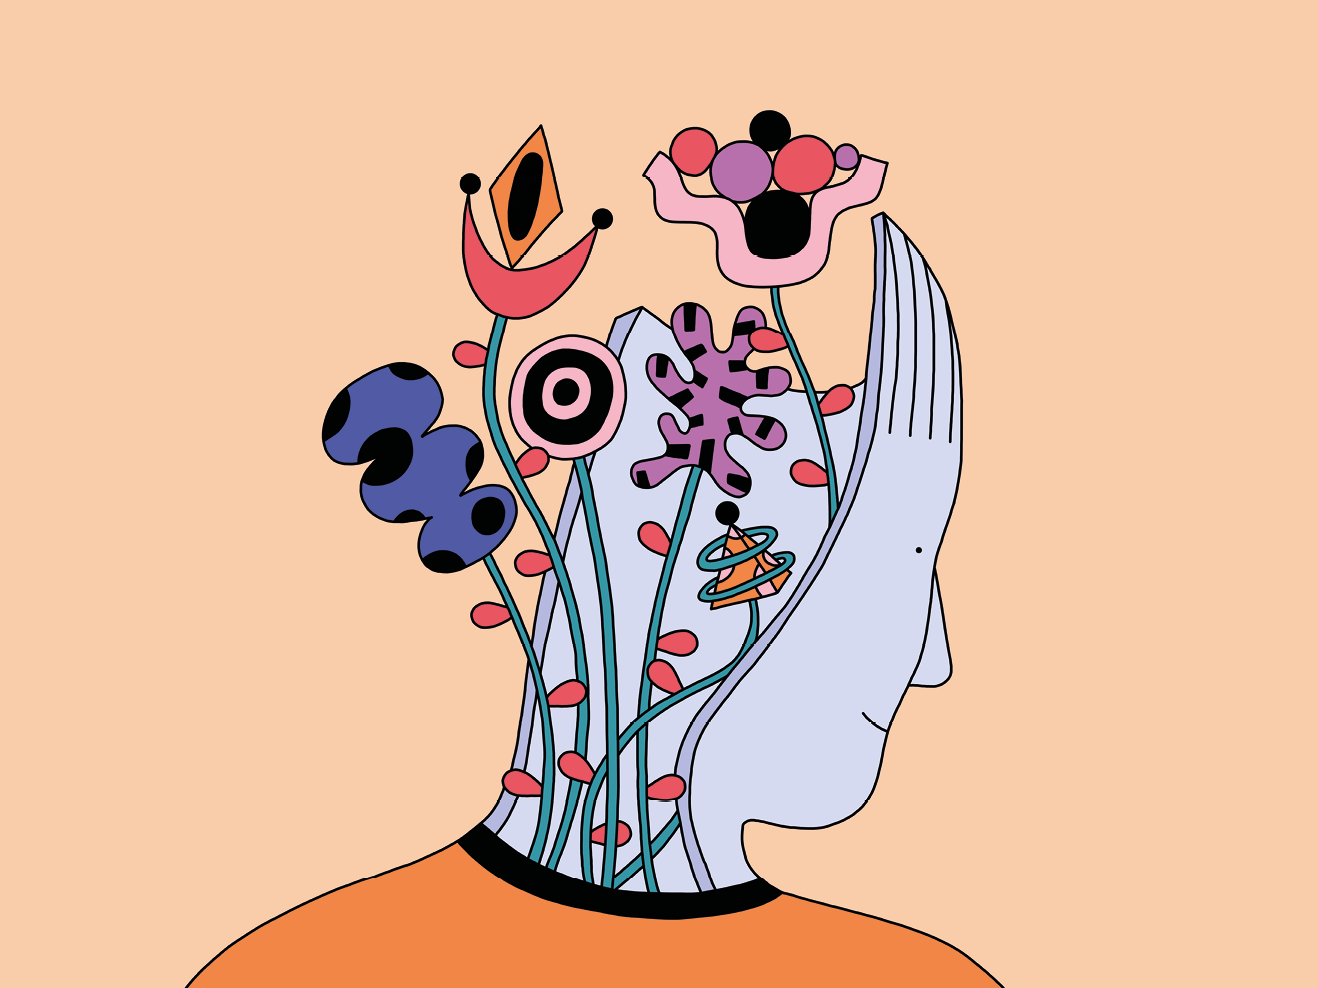 Bunte gezeichnete Illustration eines Menschenkopfs, in dem verschiedene Blumen wachsen, die Gedanken und Persönlichkeitsmerkmale symbolisieren.